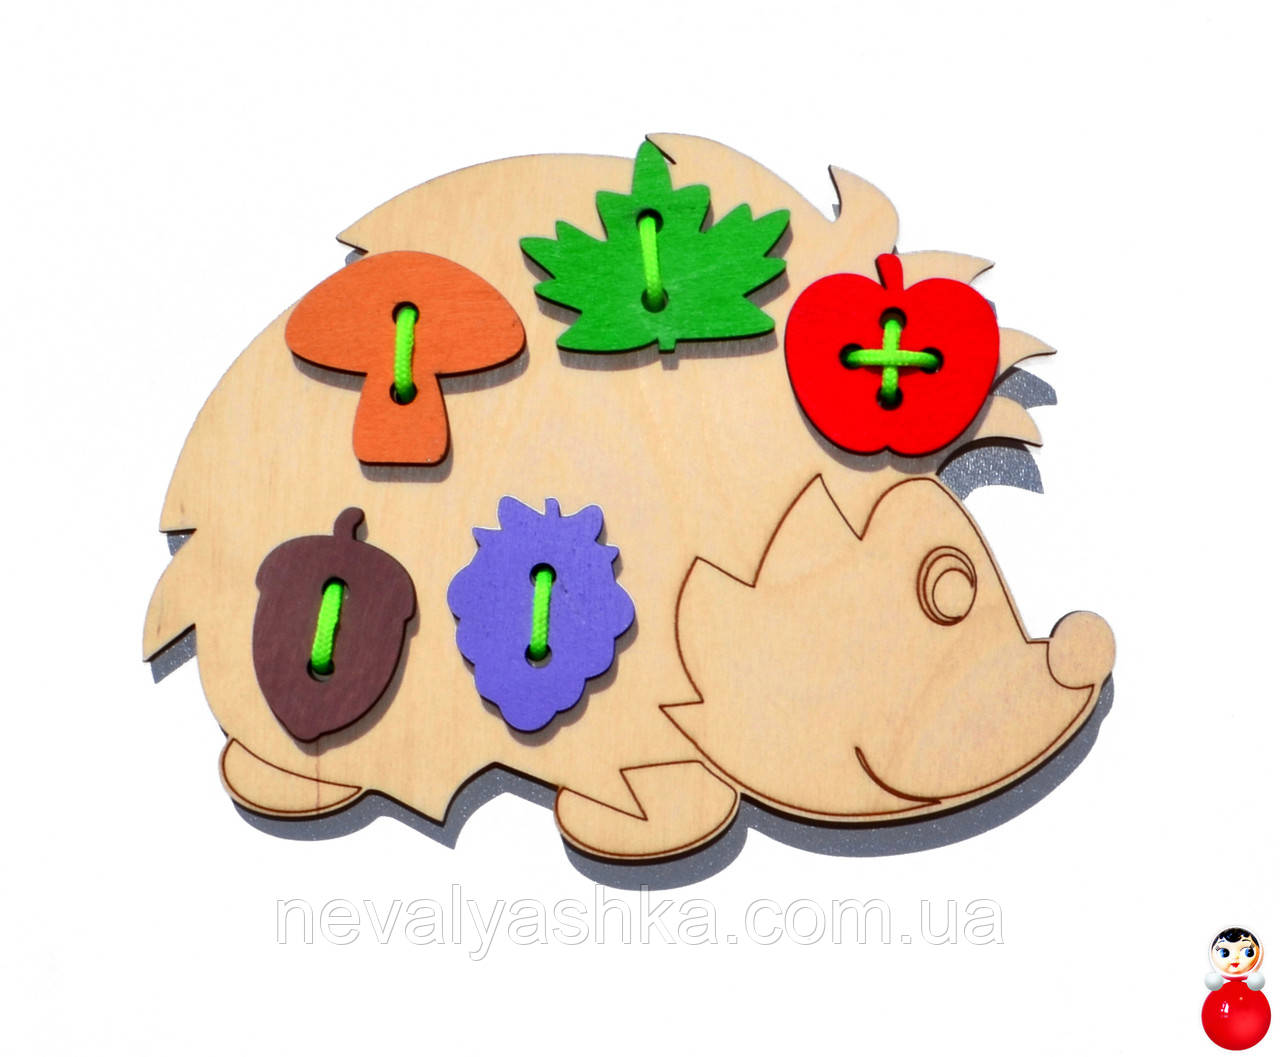 Дерев'яна іграшка-Шнурівка Їжачок 19 см Їжачок з фігурками шнурівка їжачок, MD 0494, 01119